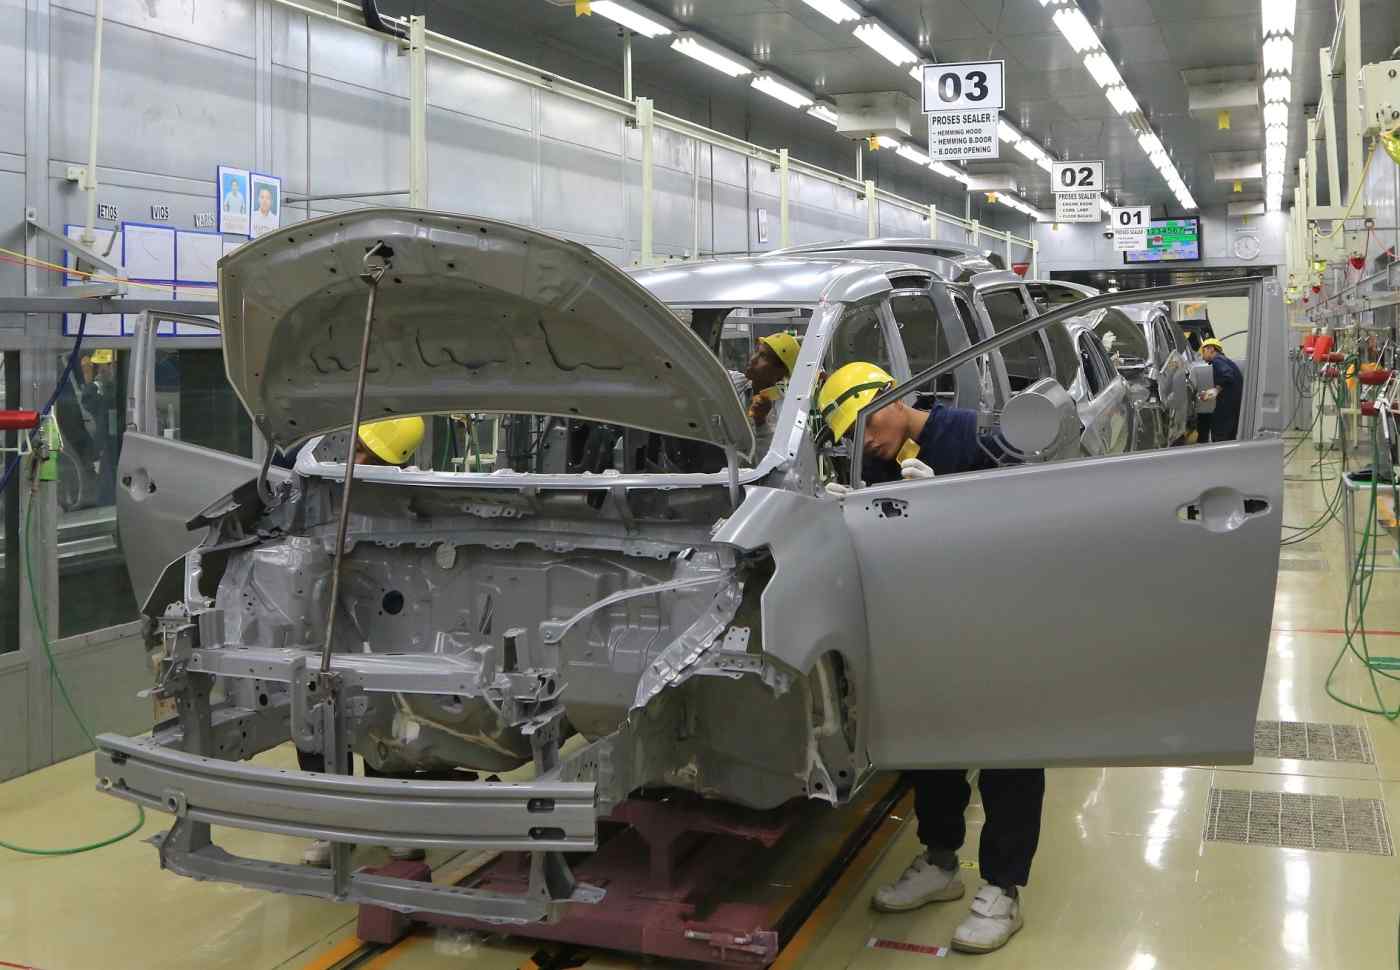 Quốc gia gần Việt Nam VinFast sắp tới: Nắm giữ bí mật gì mà Hyundai, Toyota cũng dòm ngó? - Ảnh 3.